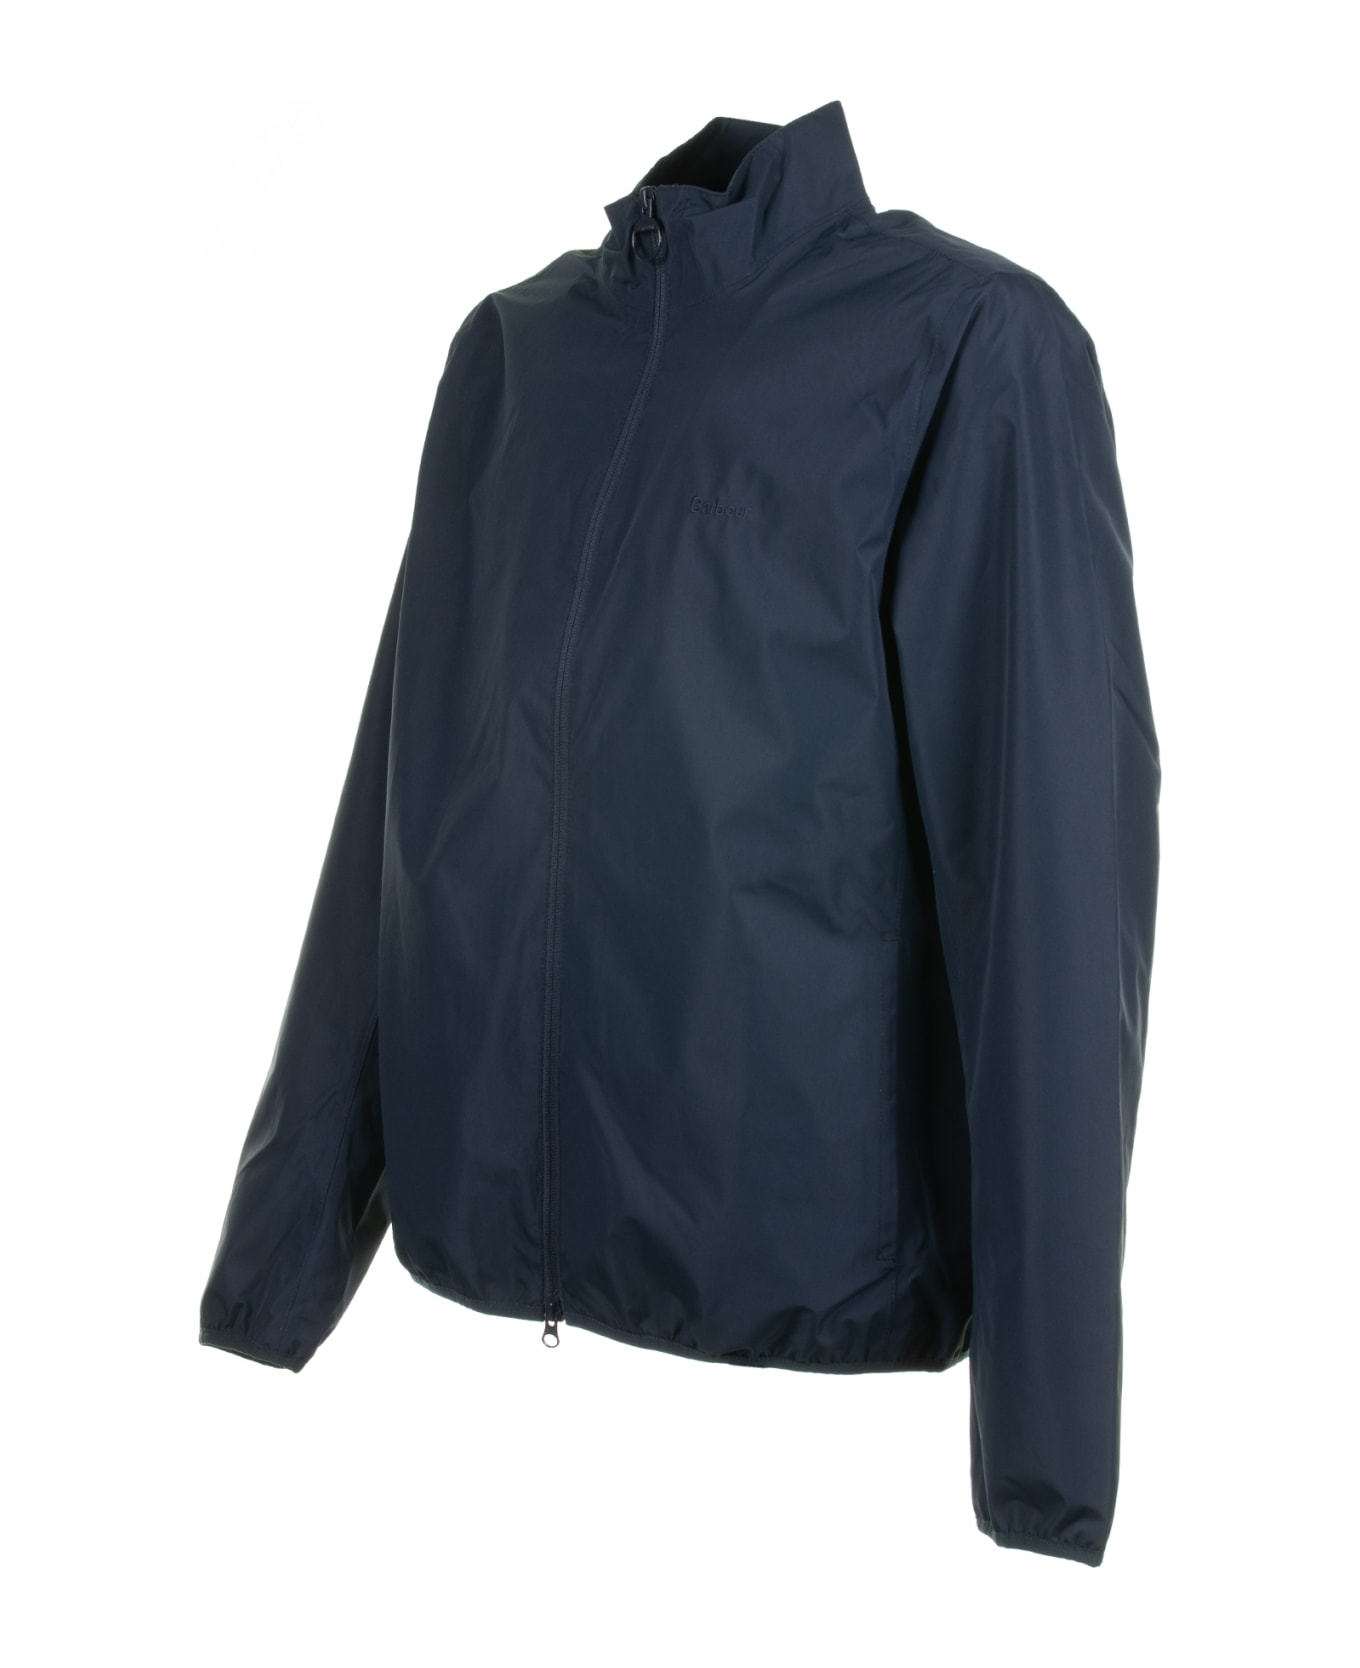 Barbour Navy Blue Jacket With Zip - NAVY ジャケット